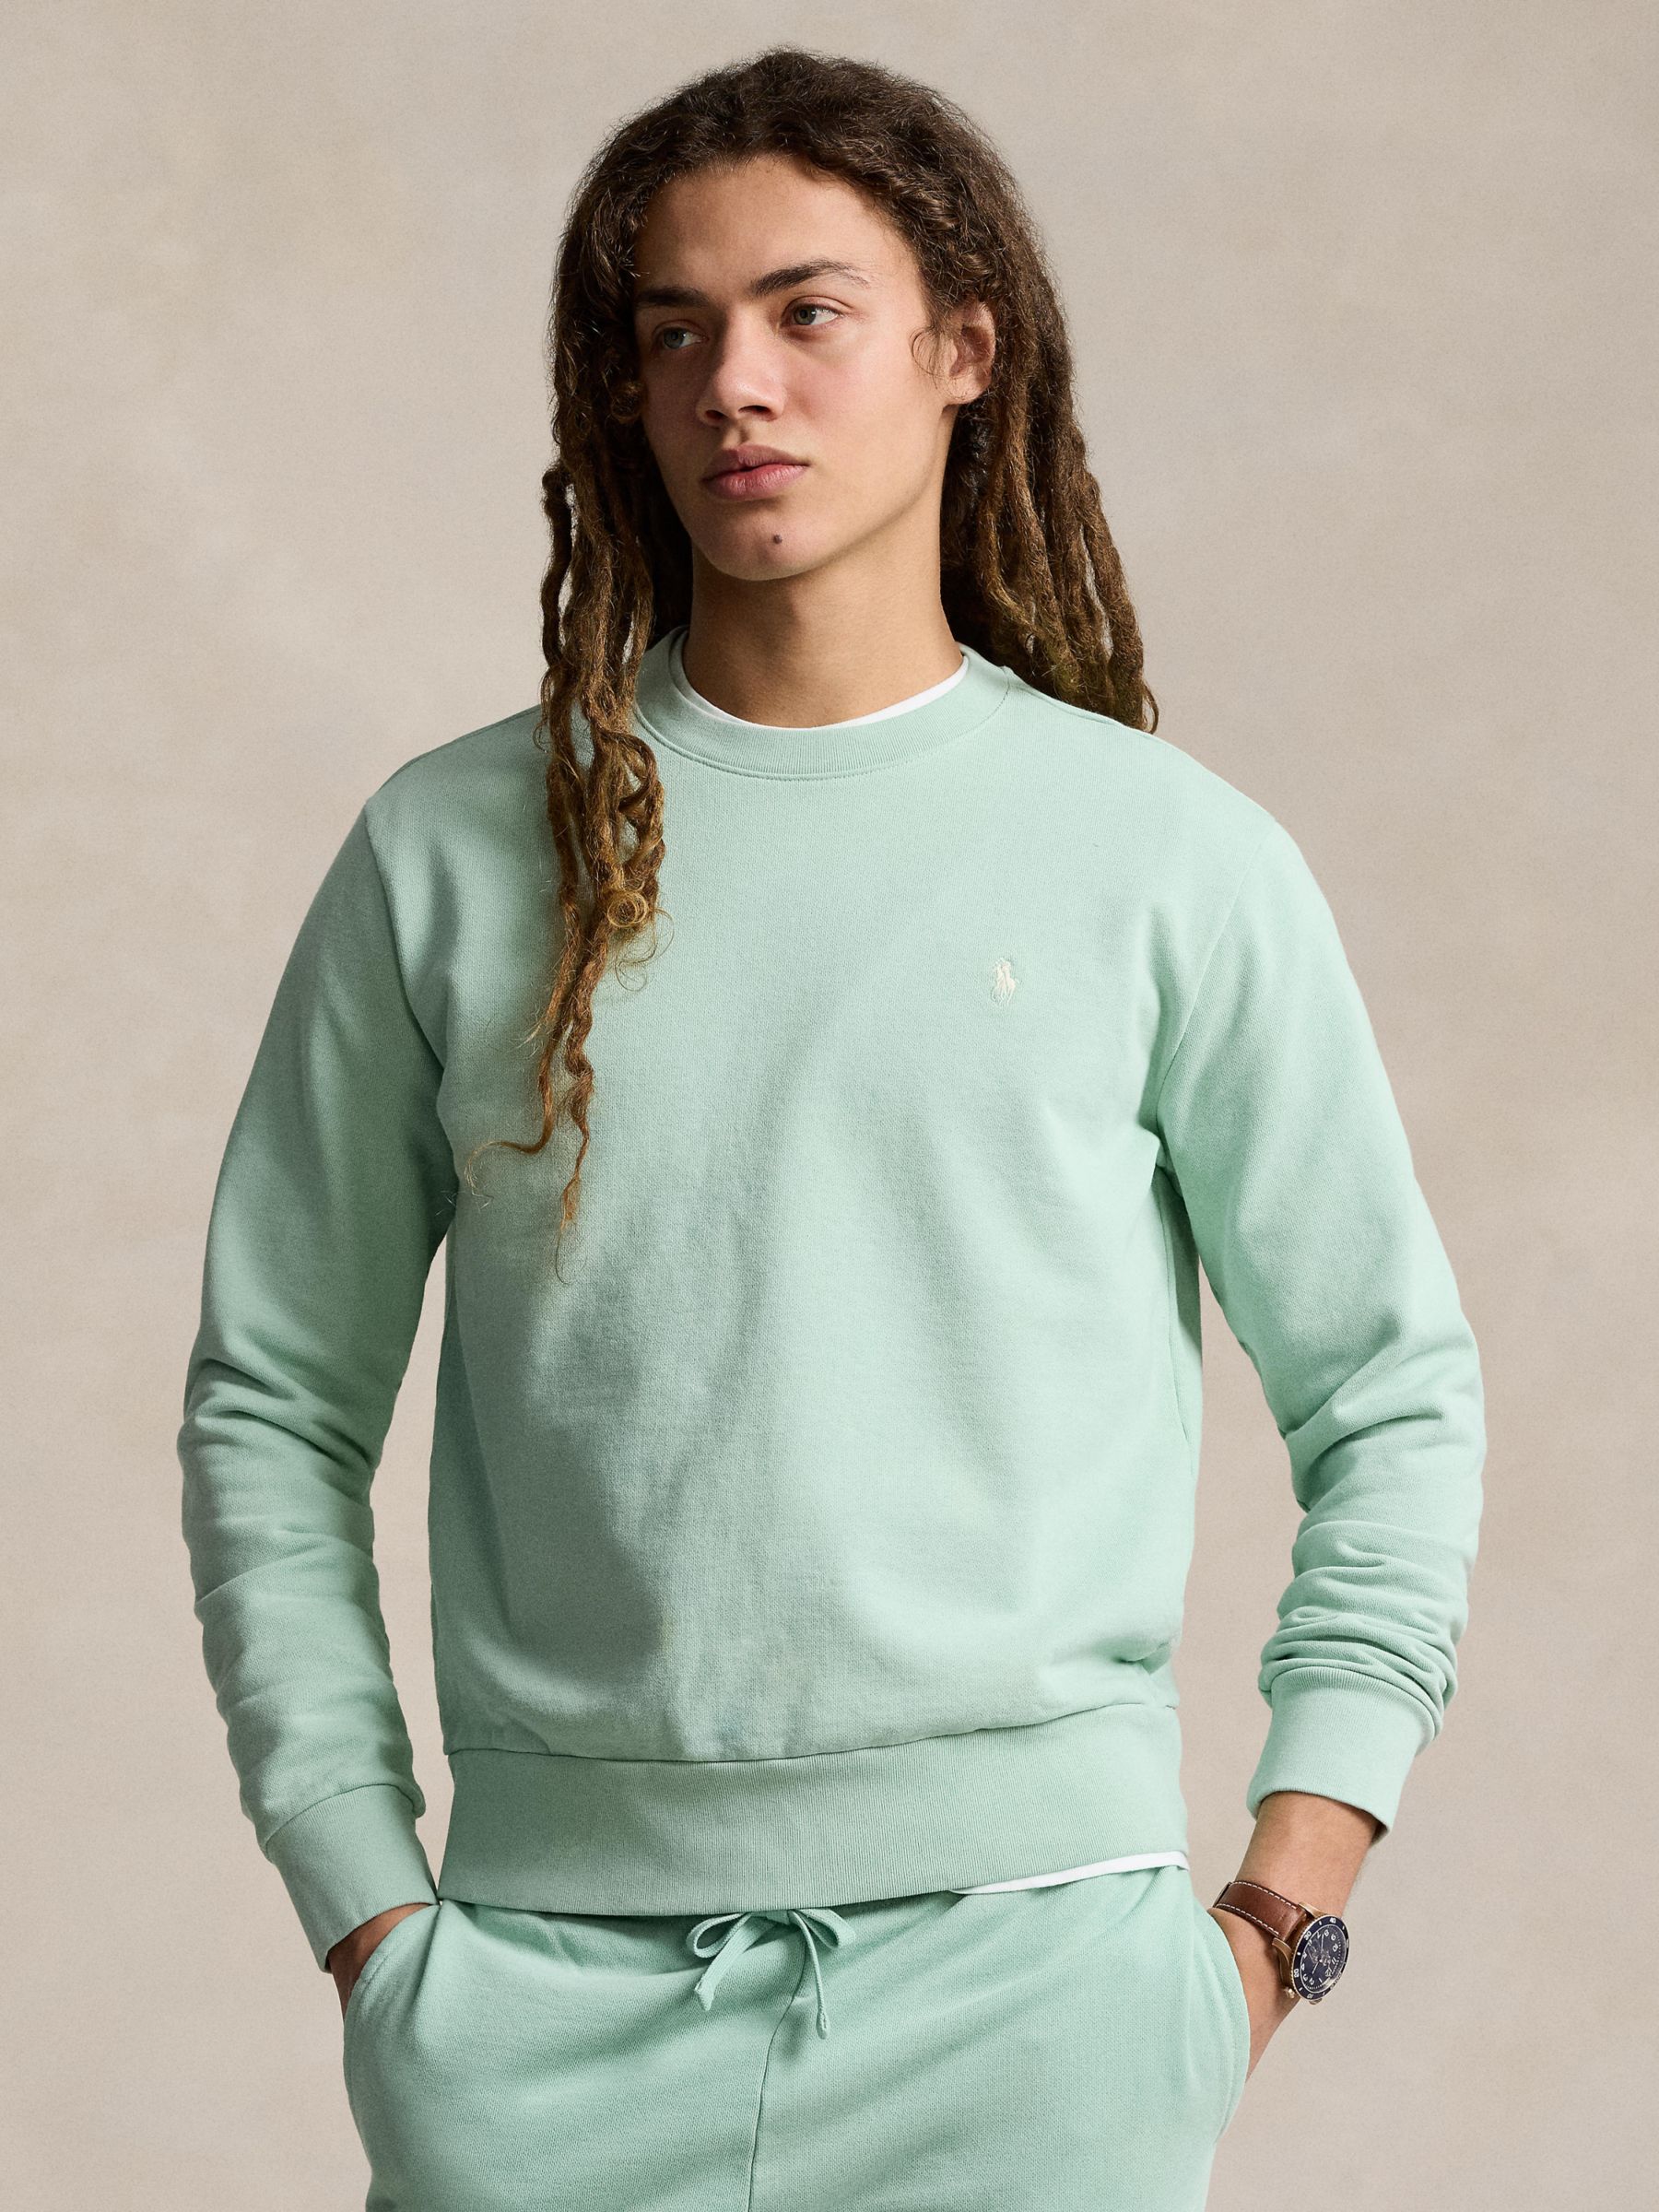 Ralph Lauren Loopback Cotton Fleece Sweatshirt, Celadon, XXL